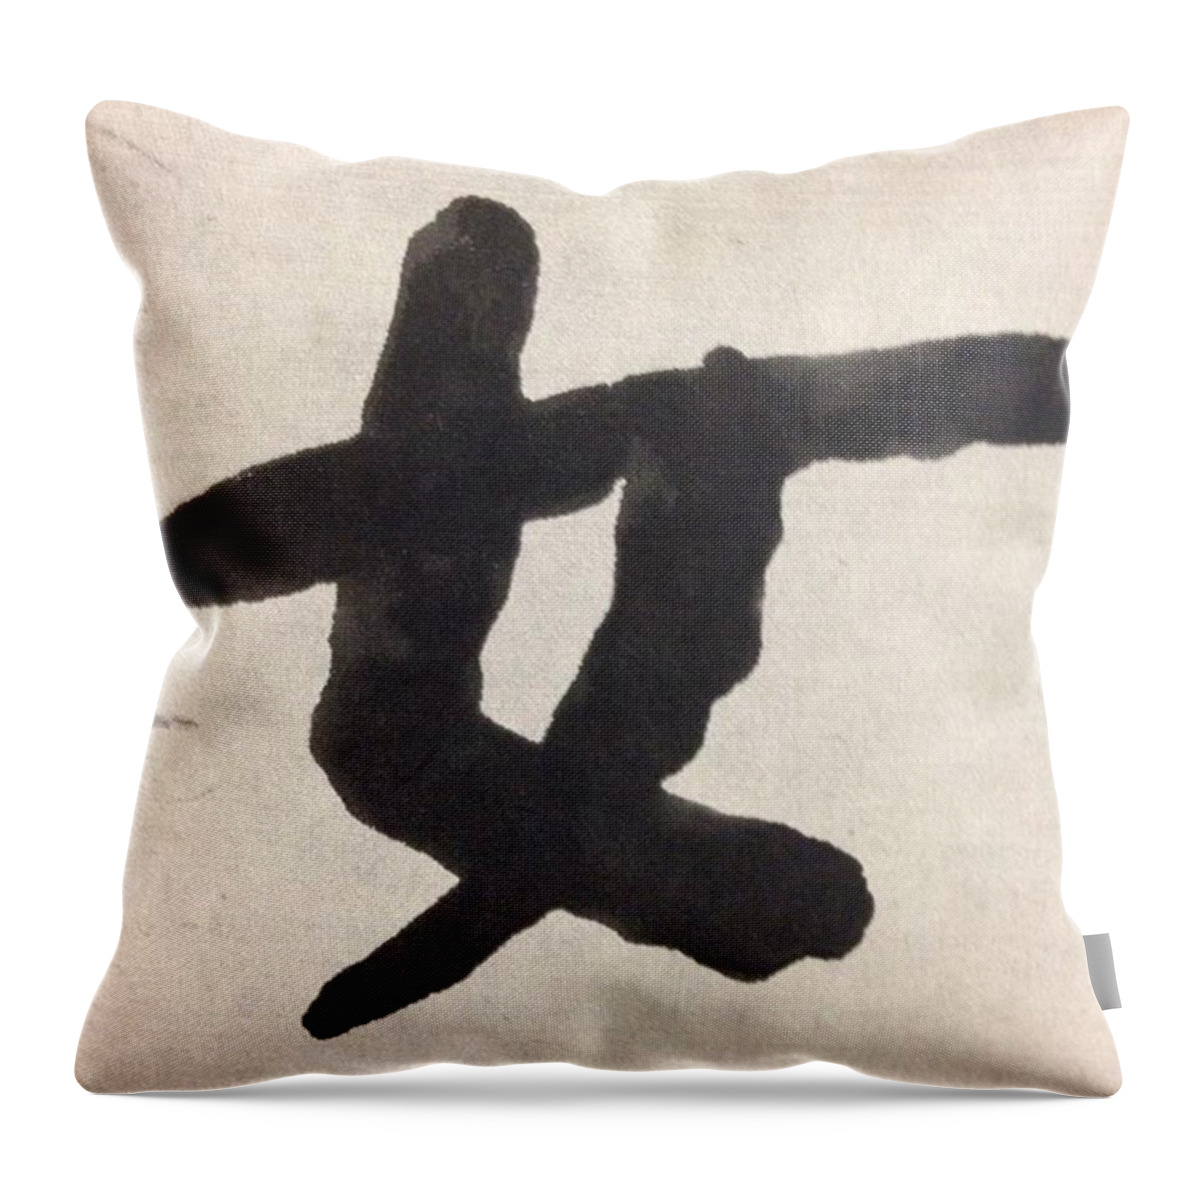 Art Throw Pillow featuring the photograph Woman #kanji #art #calligraphy #japan by Shoji Tamura